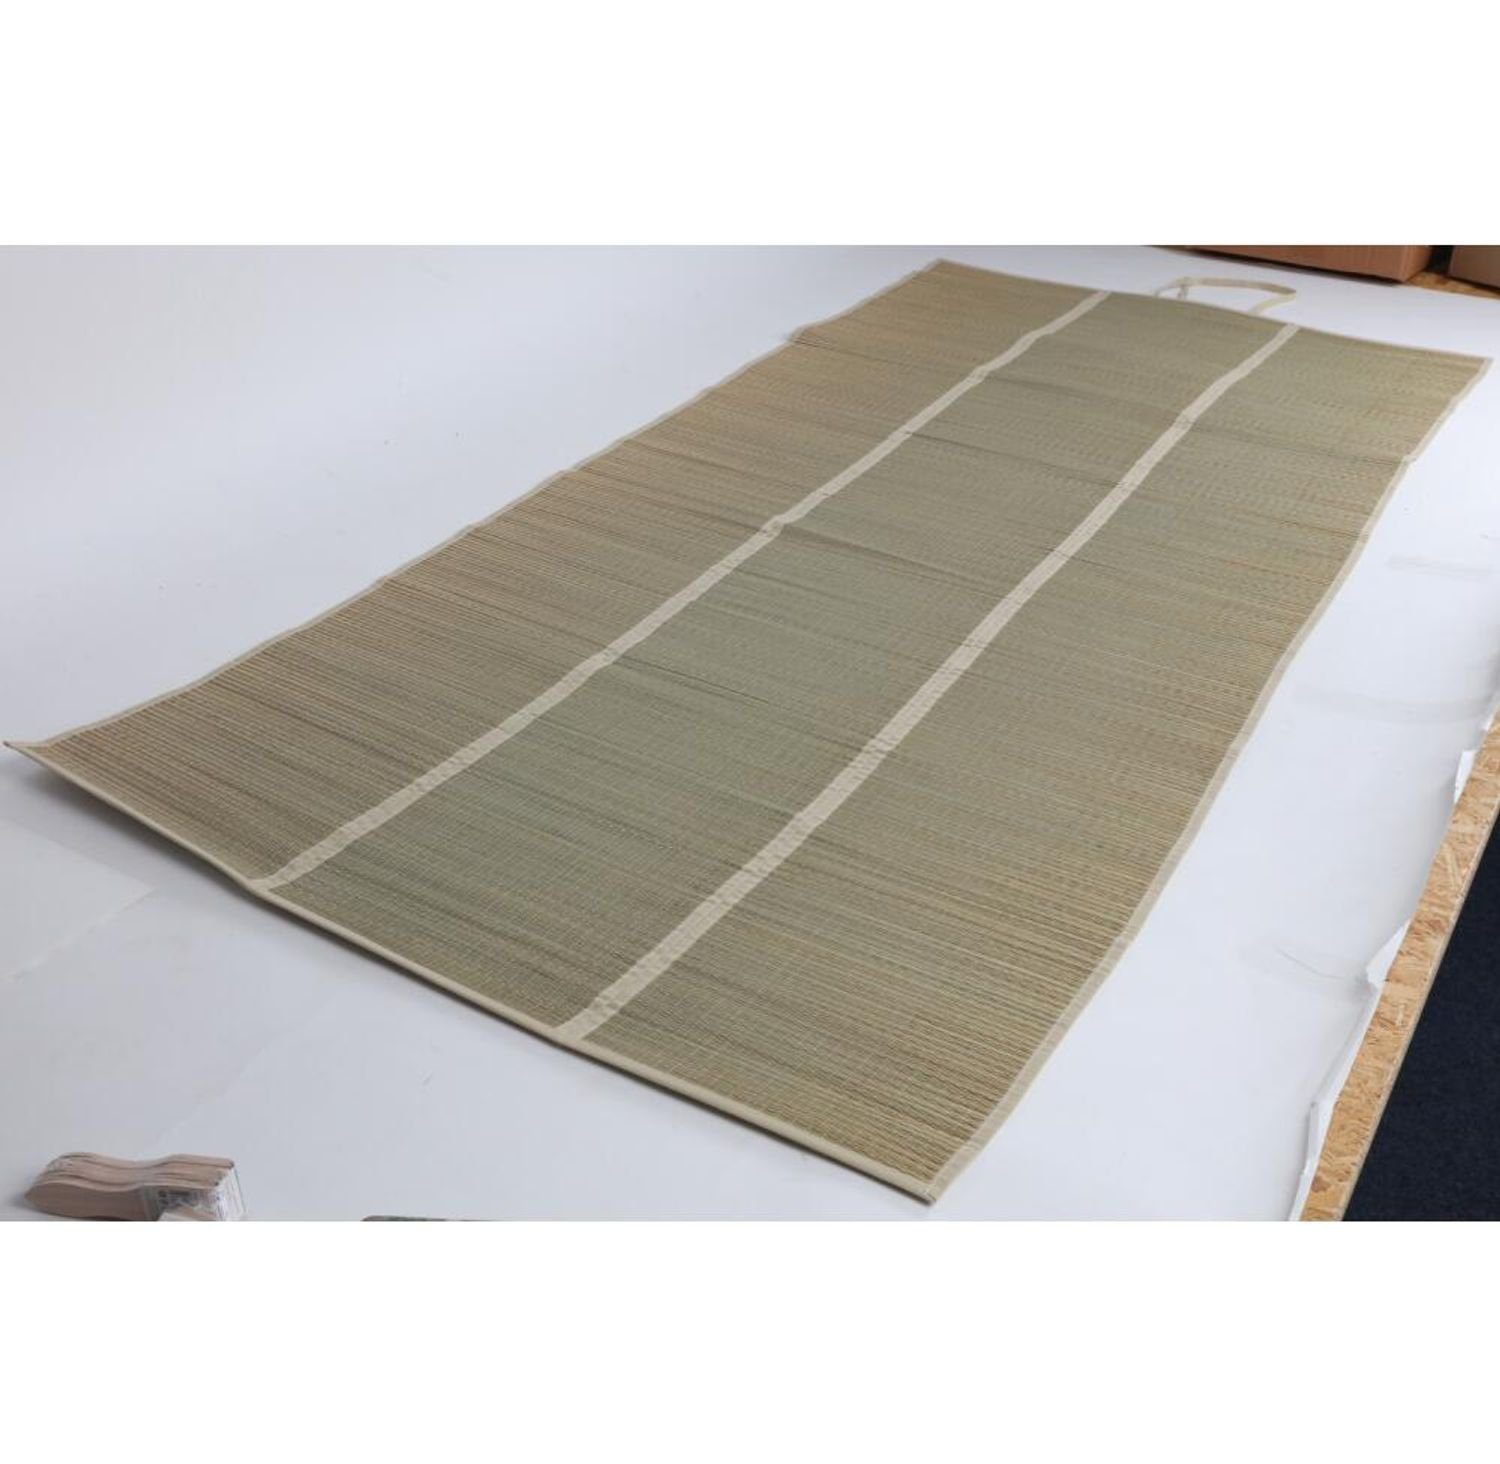 BURI Yogamatte 12x Decken Unterlage Strandmatte Tuch Sonnenliege 90x190cm Seegras